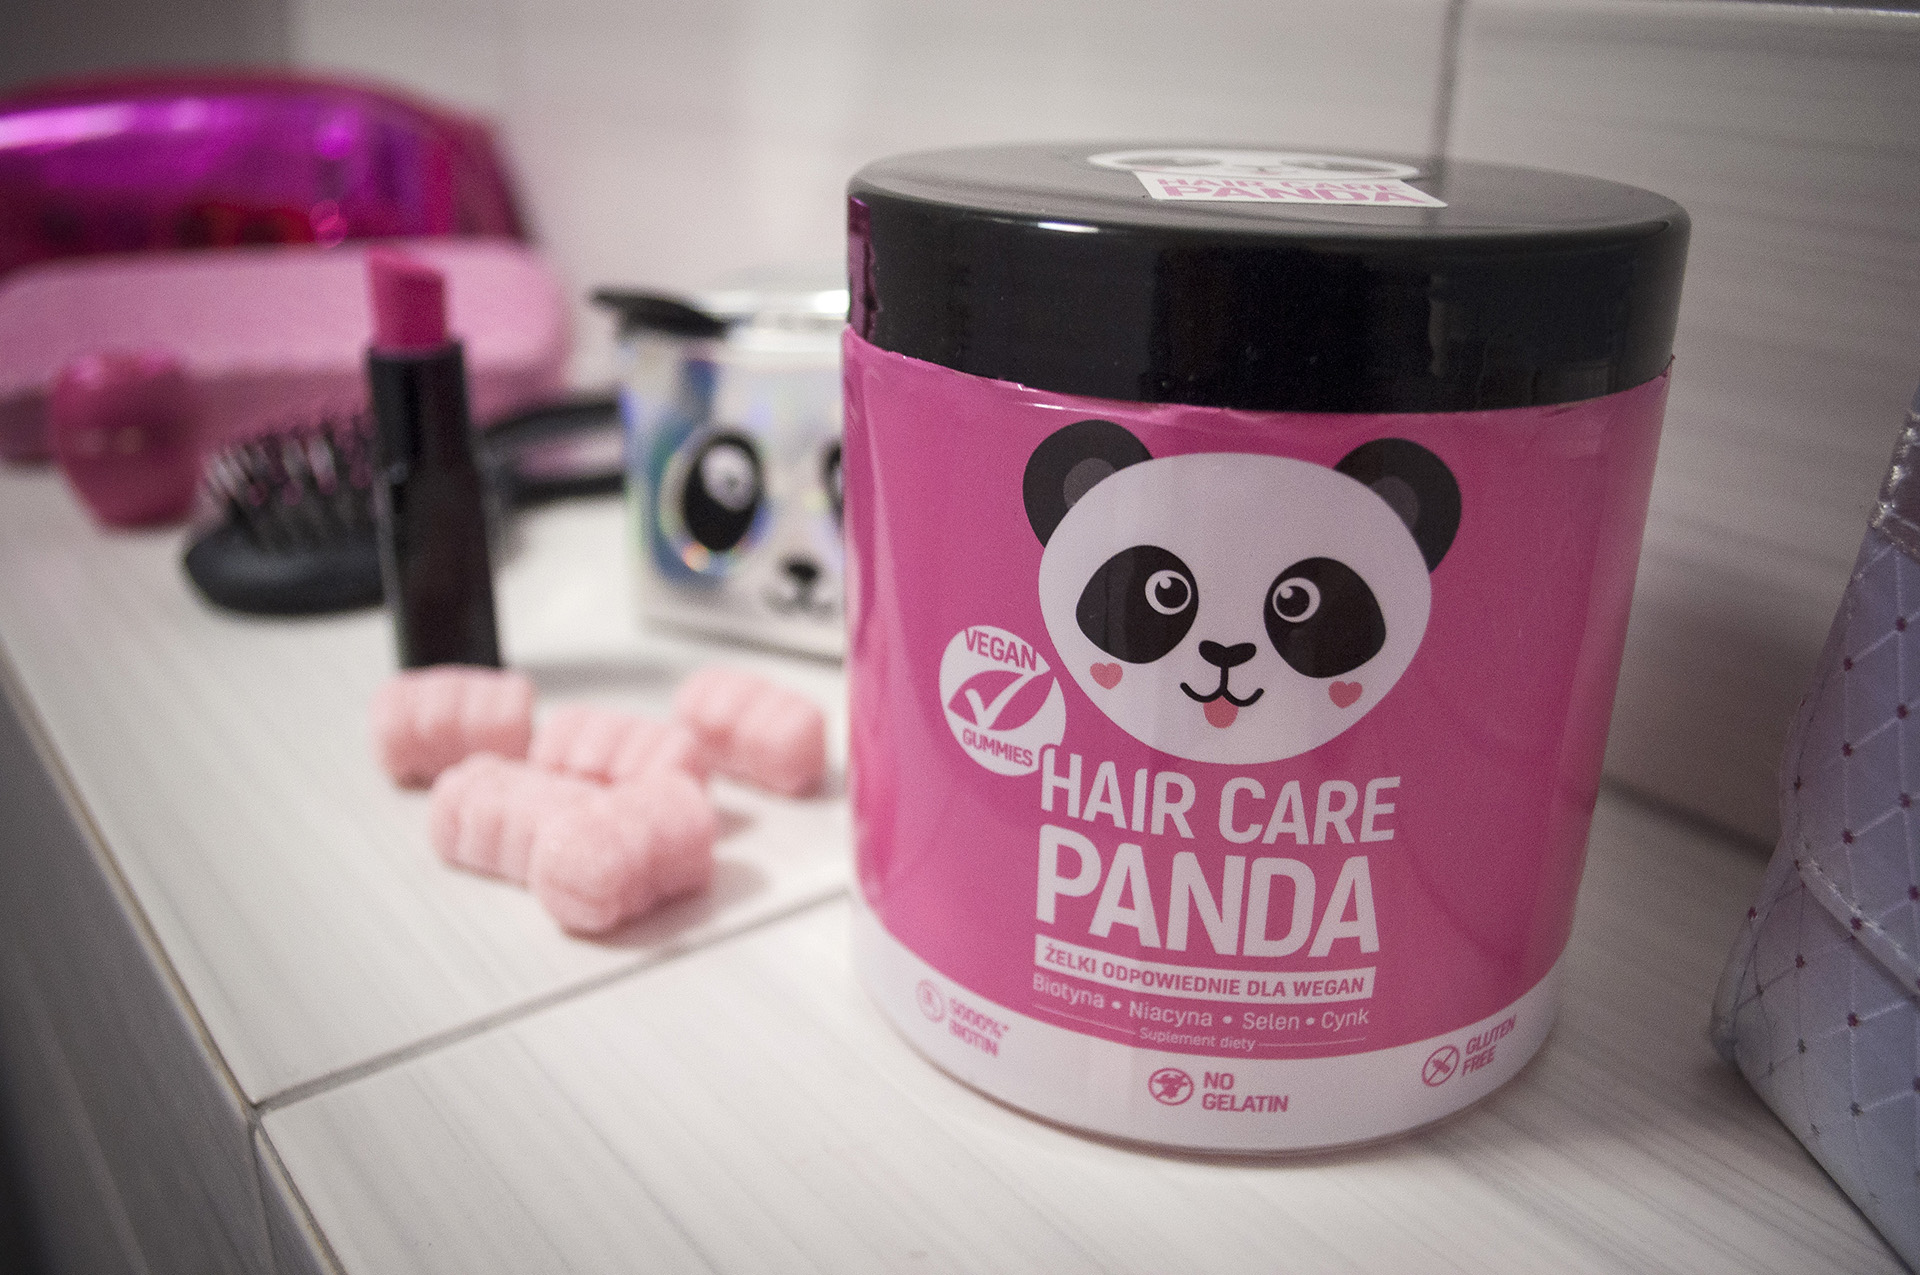 Jakie efekty udało mi się uzyskać stosując Hair Care Panda?